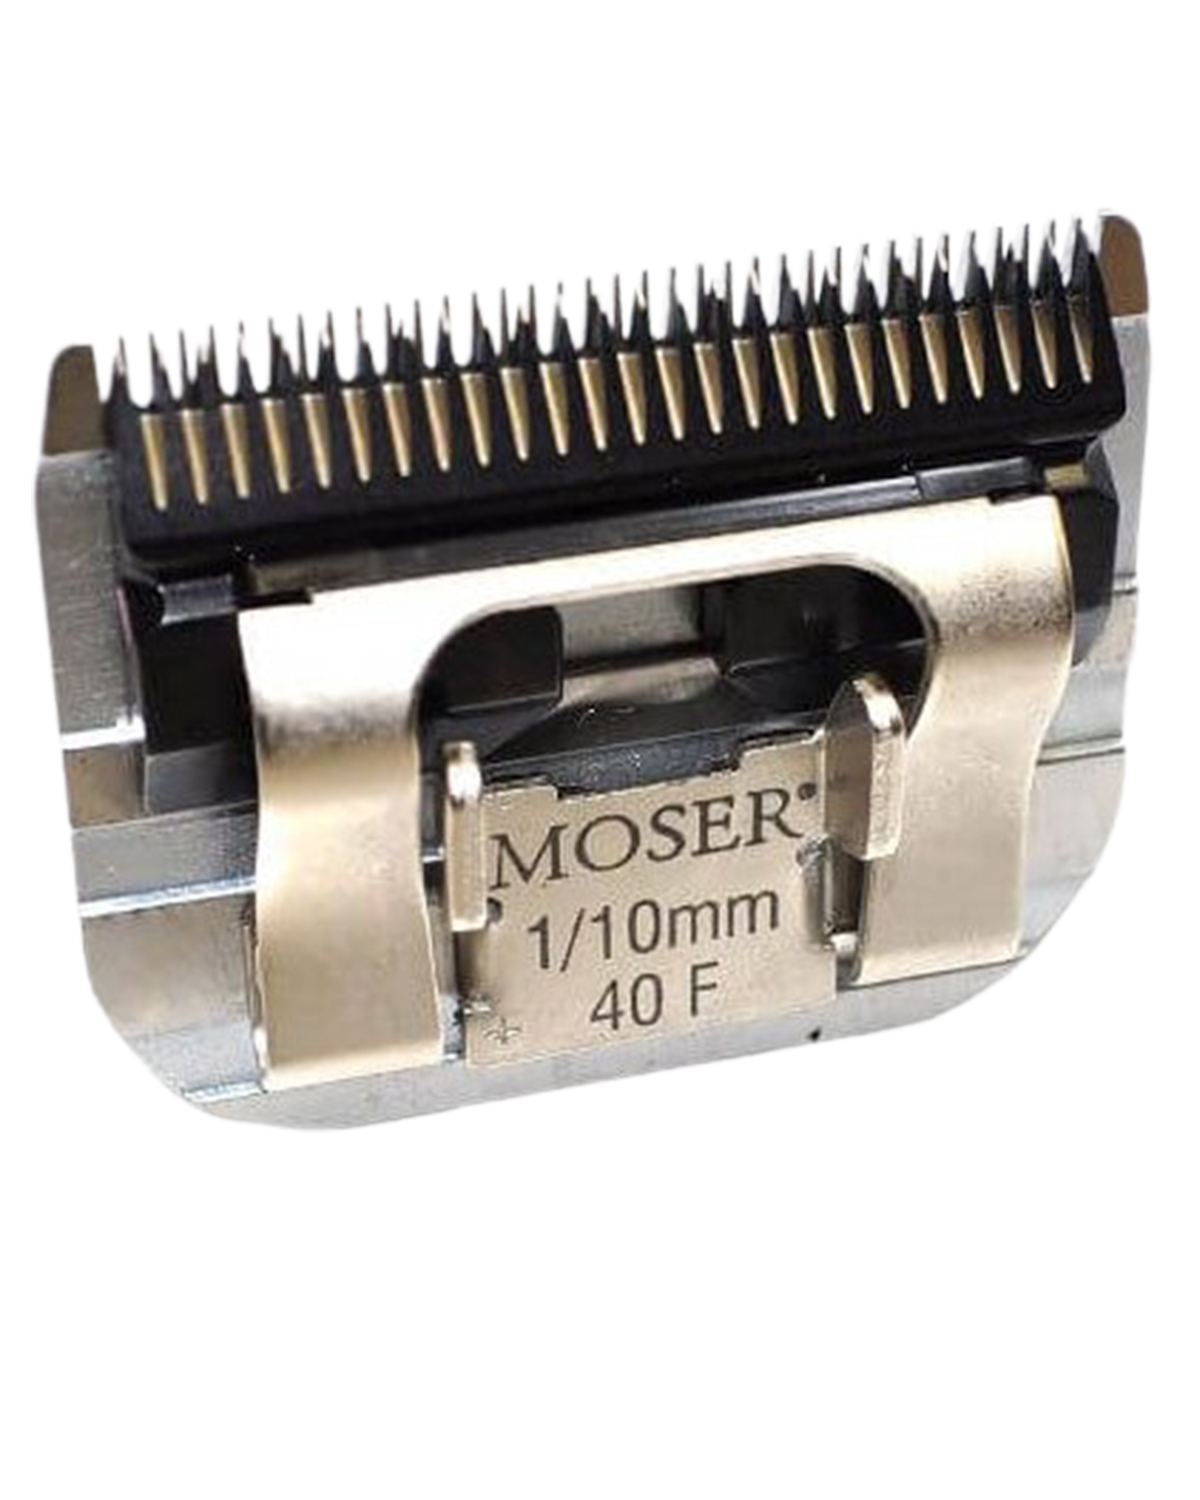 Ножевой блок мозер. Ножевой блок Moser 1245-7310, 1/10 мм, стандарт а5. Moser 1245-7310. Нож Moser 1245-7310. Ножевой блок Moser 0,1mm.